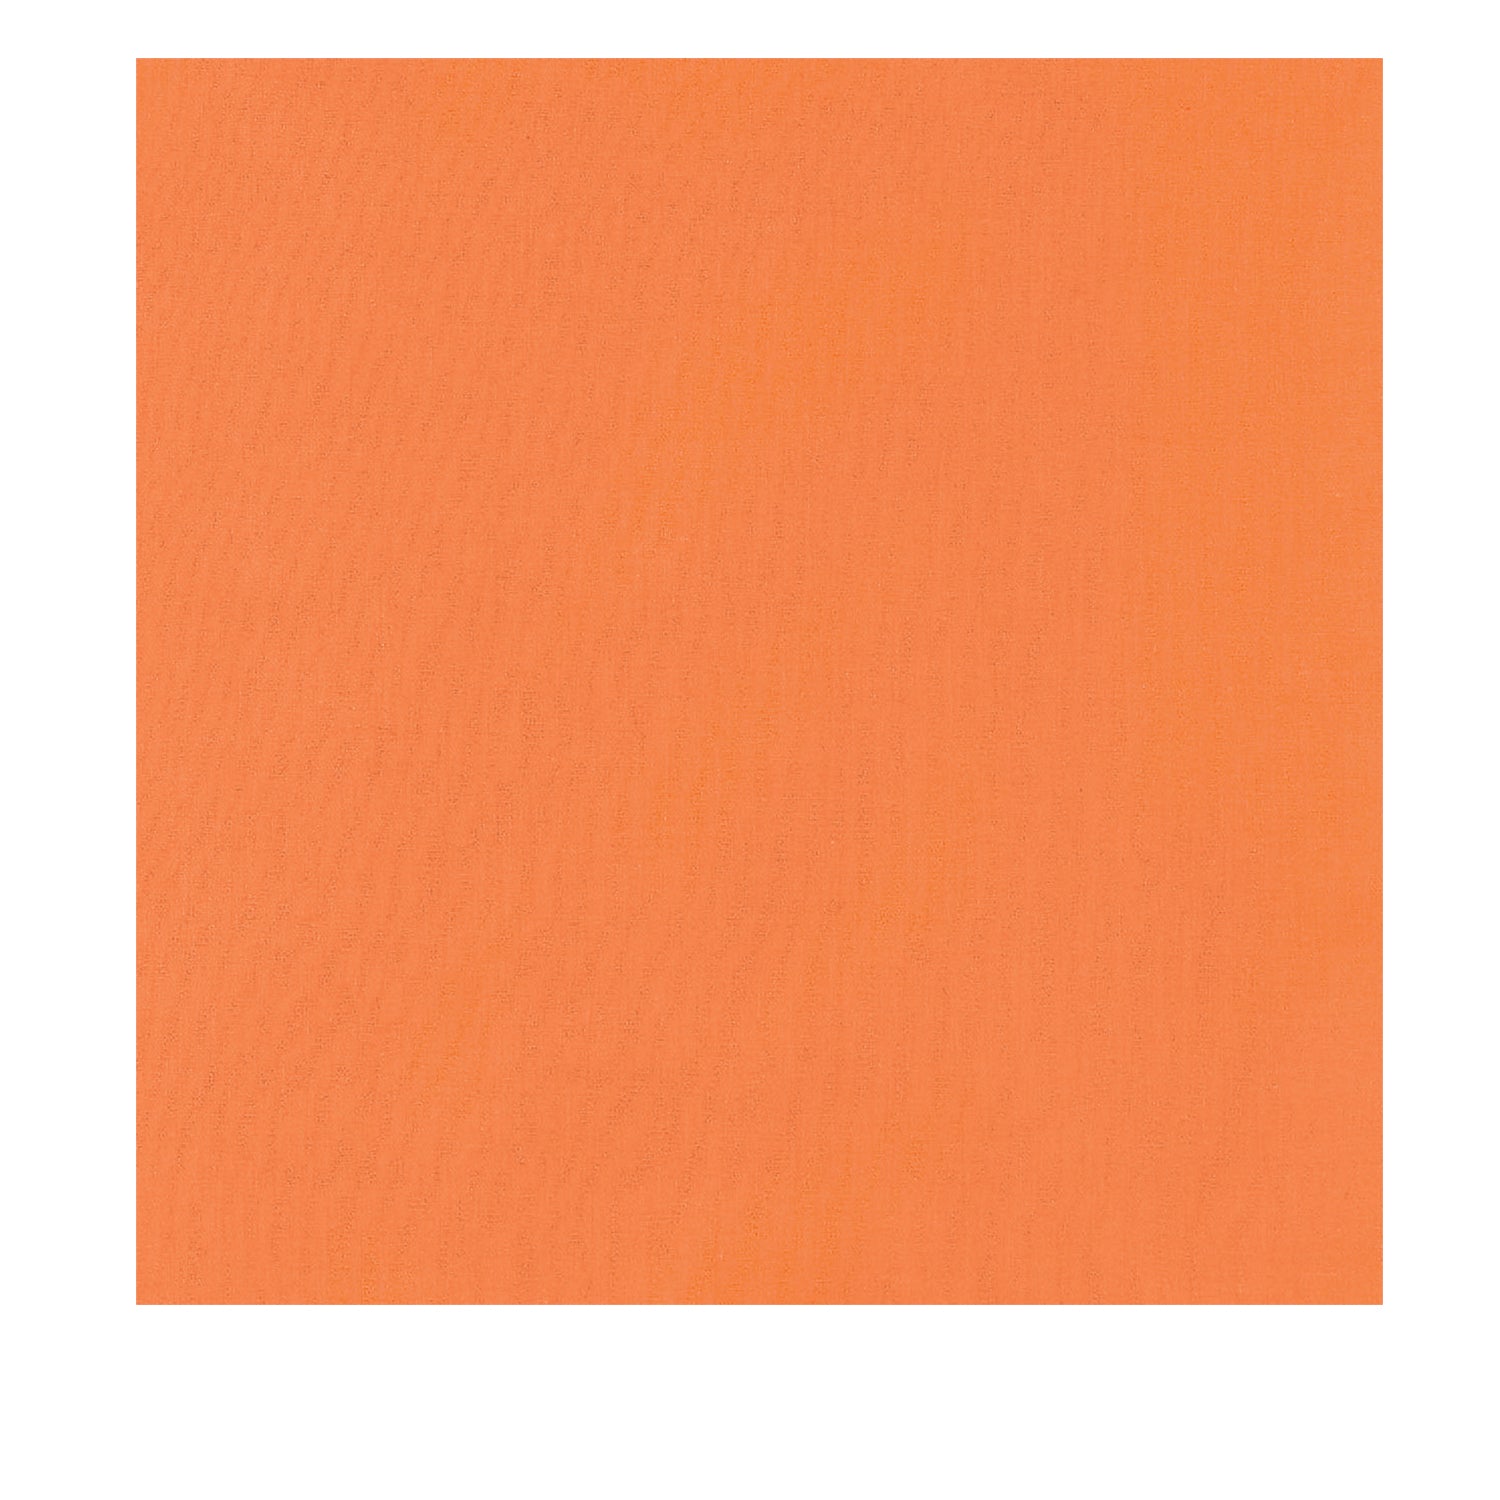 Rothco Solid Color Bandana - 22x22 inch